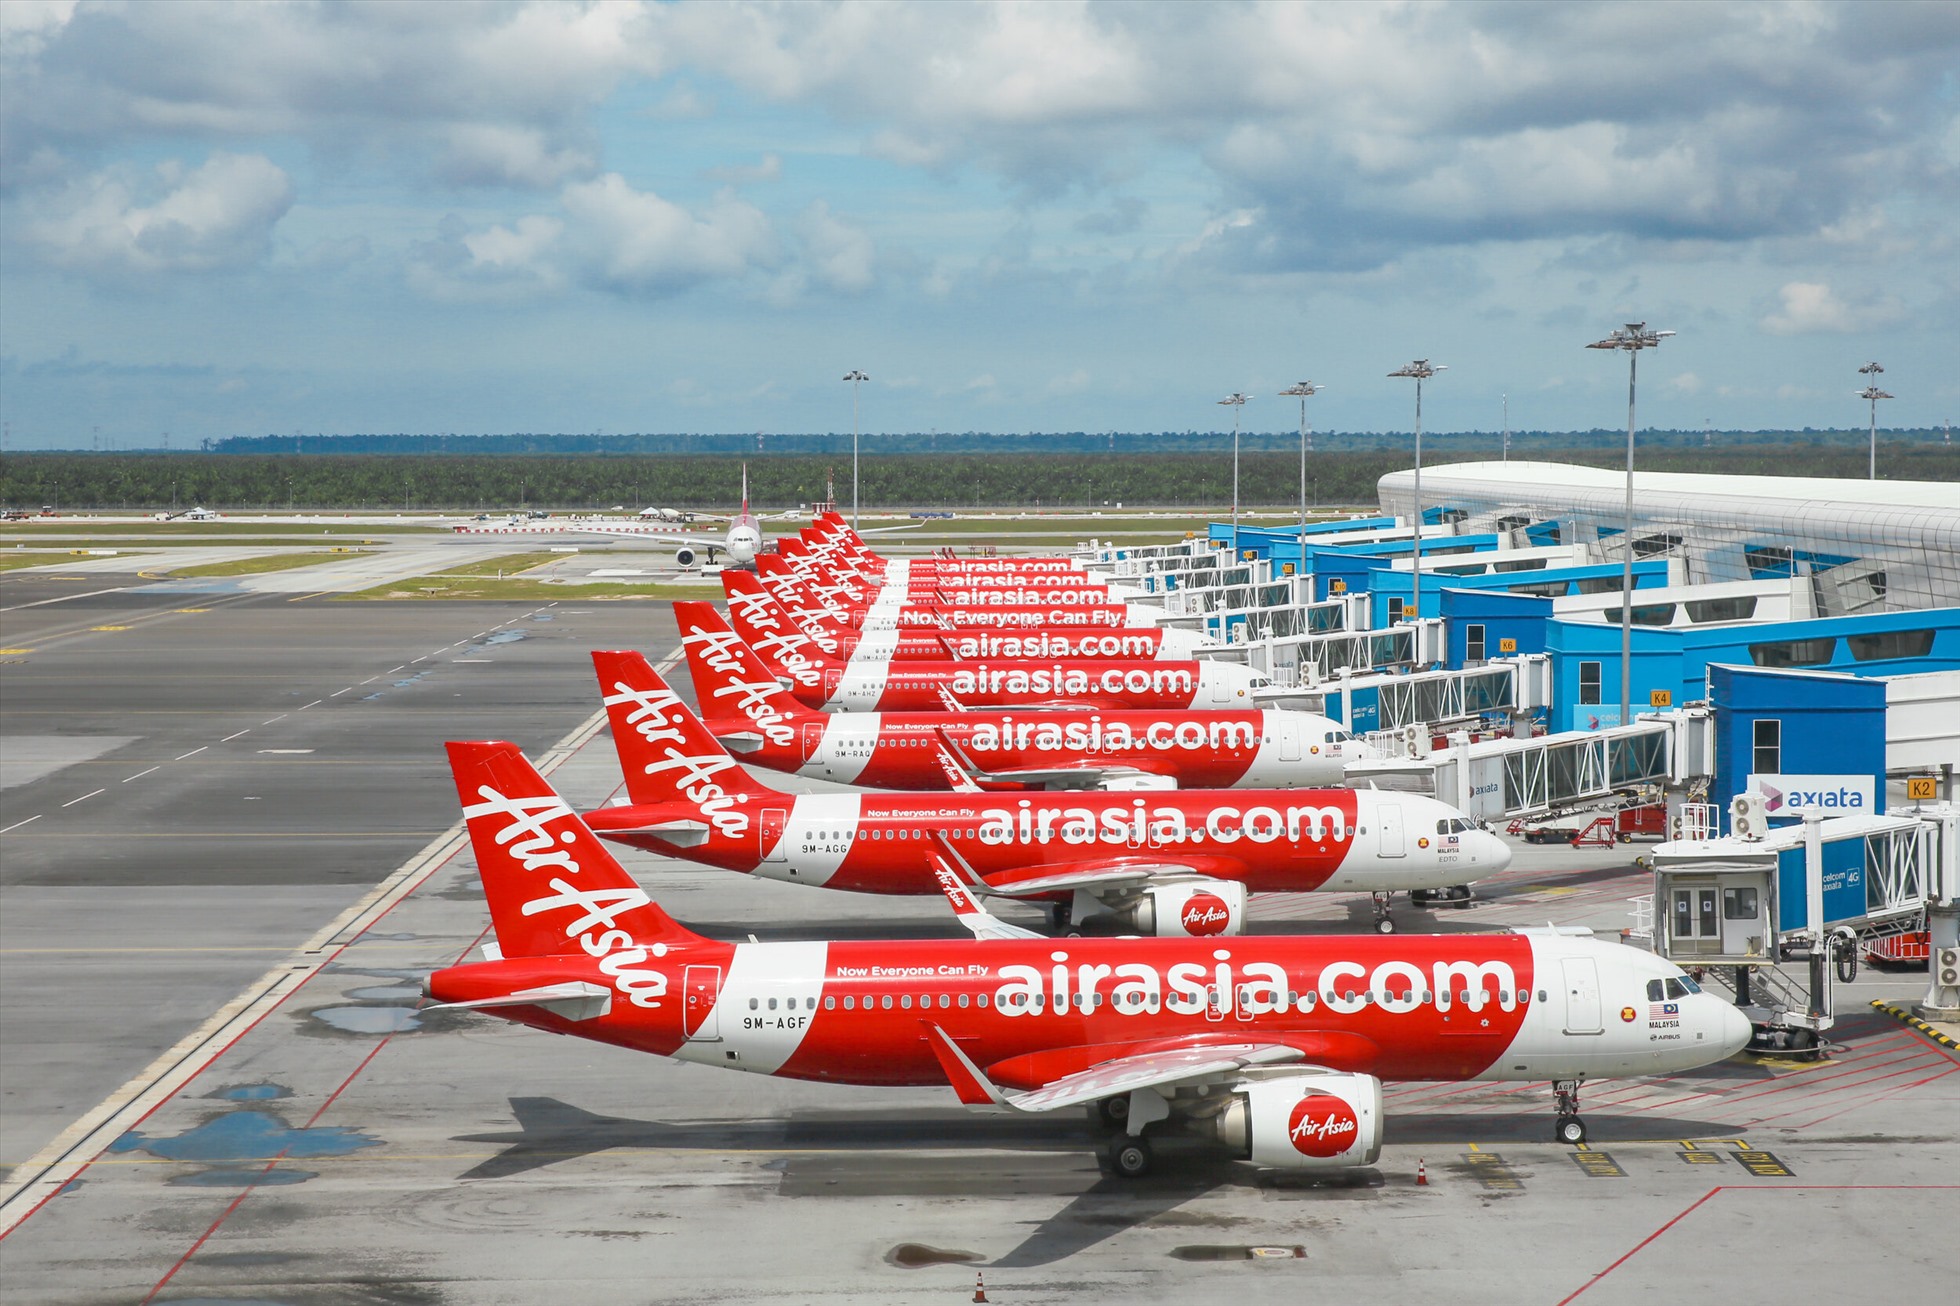 AirAsia được vinh danh là “Hãng hàng không giá rẻ tốt nhất thế giới“. Ảnh: AirAsia